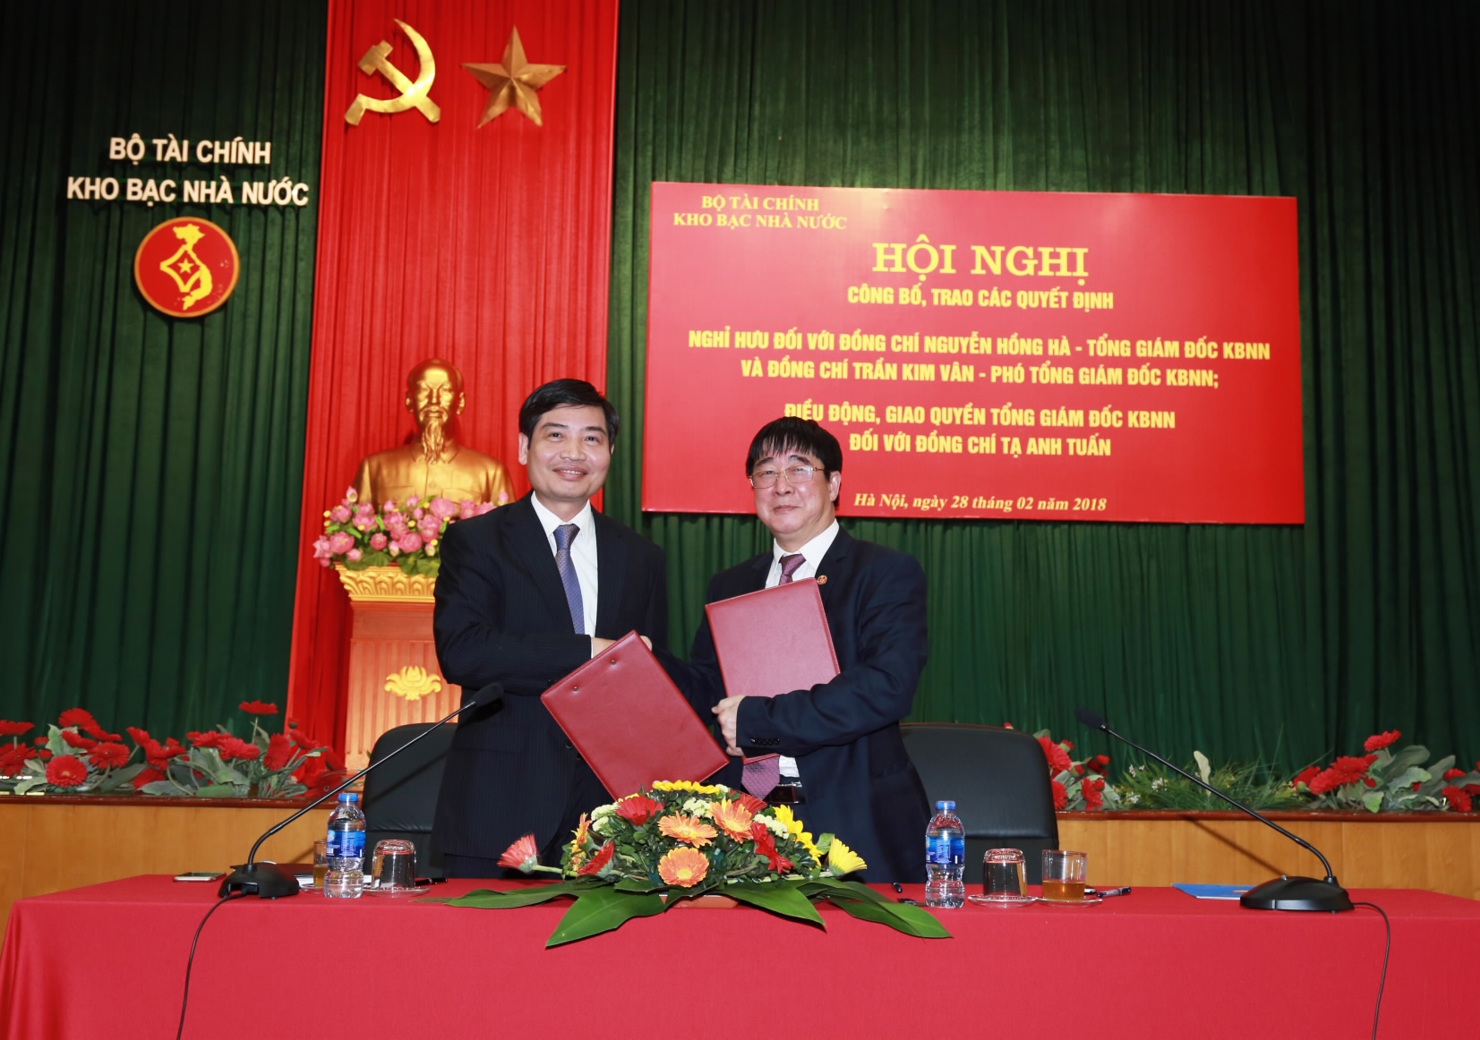 Nguyên Tổng Giám đốc Nguyễn Hồng Hà và Quyền Tổng Giám đốc Tạ Anh Tuấn chính thức ký biên bản bàn giao nhiệm vụ Tổng Giám đốc KBNN.